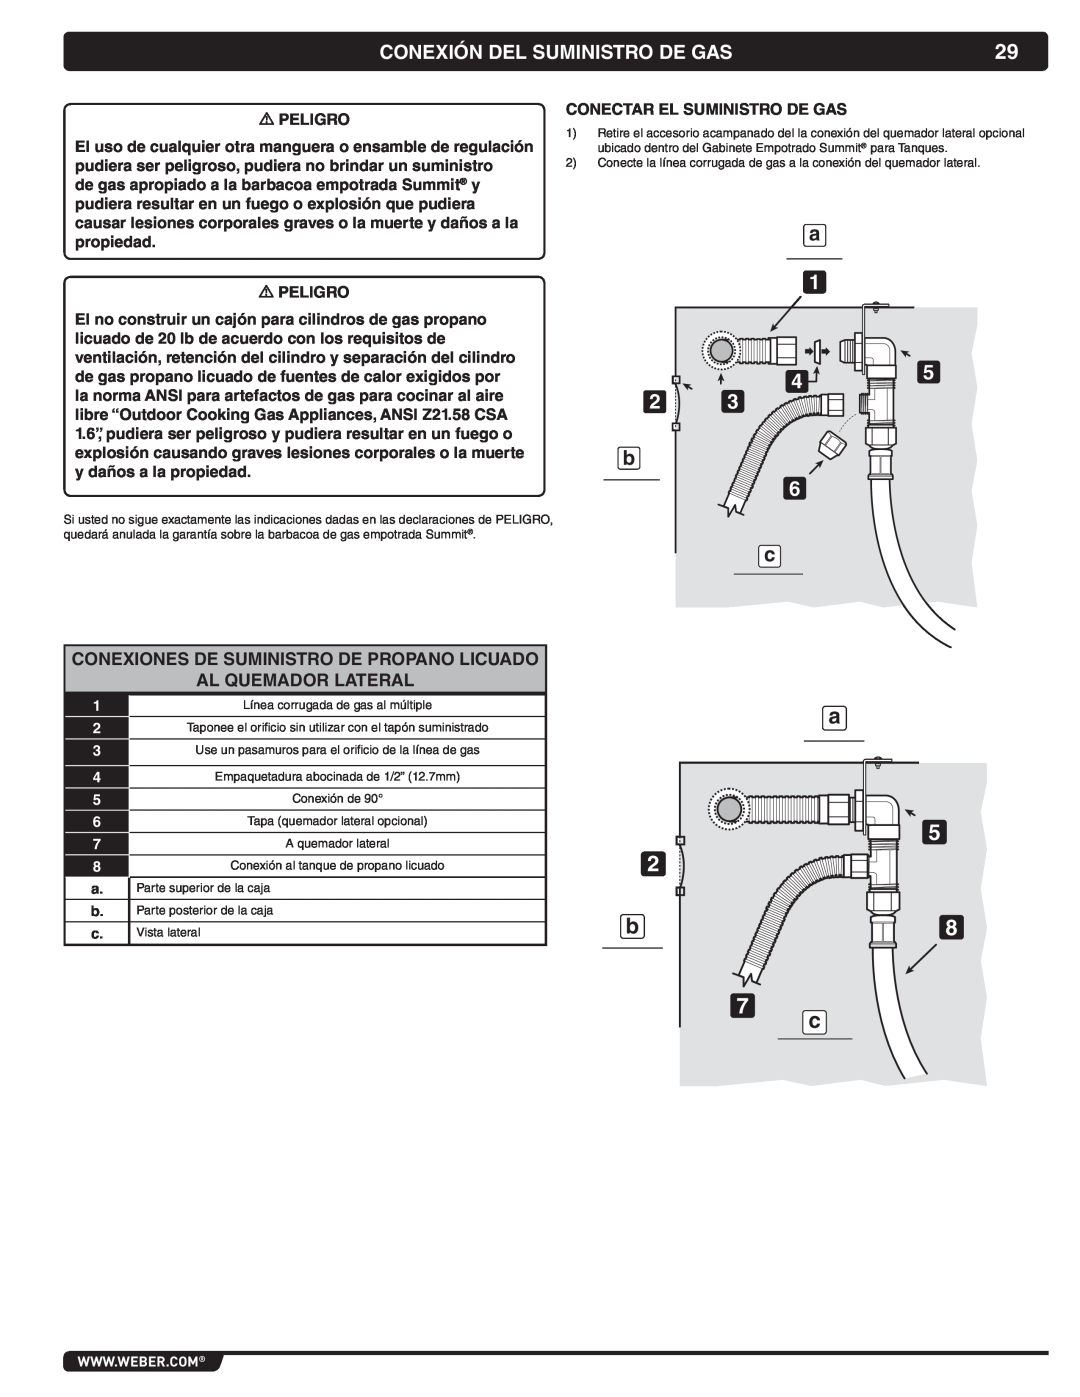 Weber 56069 manual Conexión Del Suministro De Gas, Conexiones De Suministro De Propano Licuado Al Quemador Lateral 